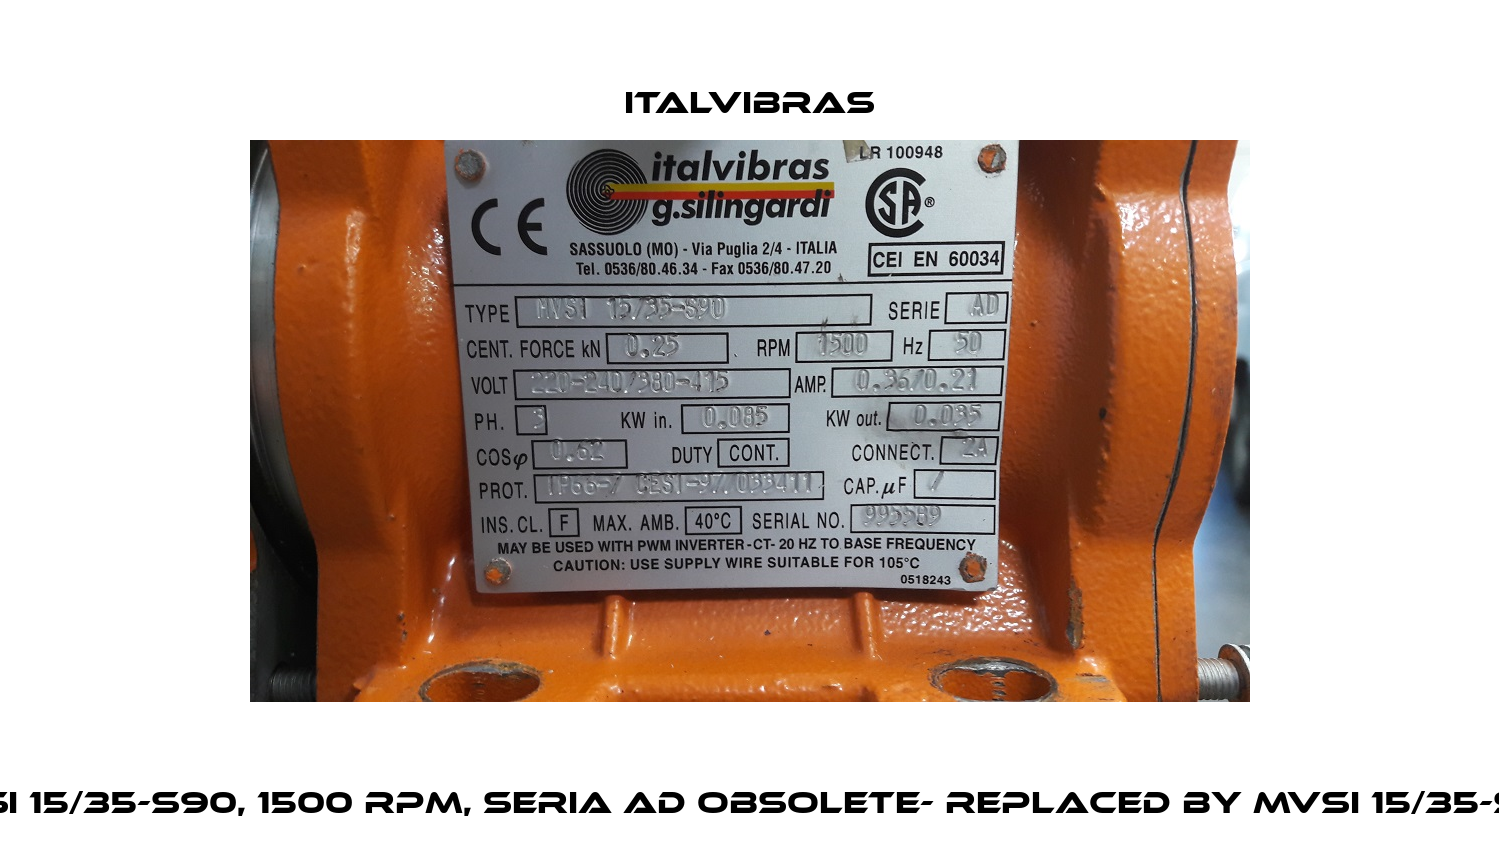 MVSI 15/35-S90, 1500 RPM, SERIA AD OBSOLETE- REPLACED BY MVSI 15/35-S02  Italvibras